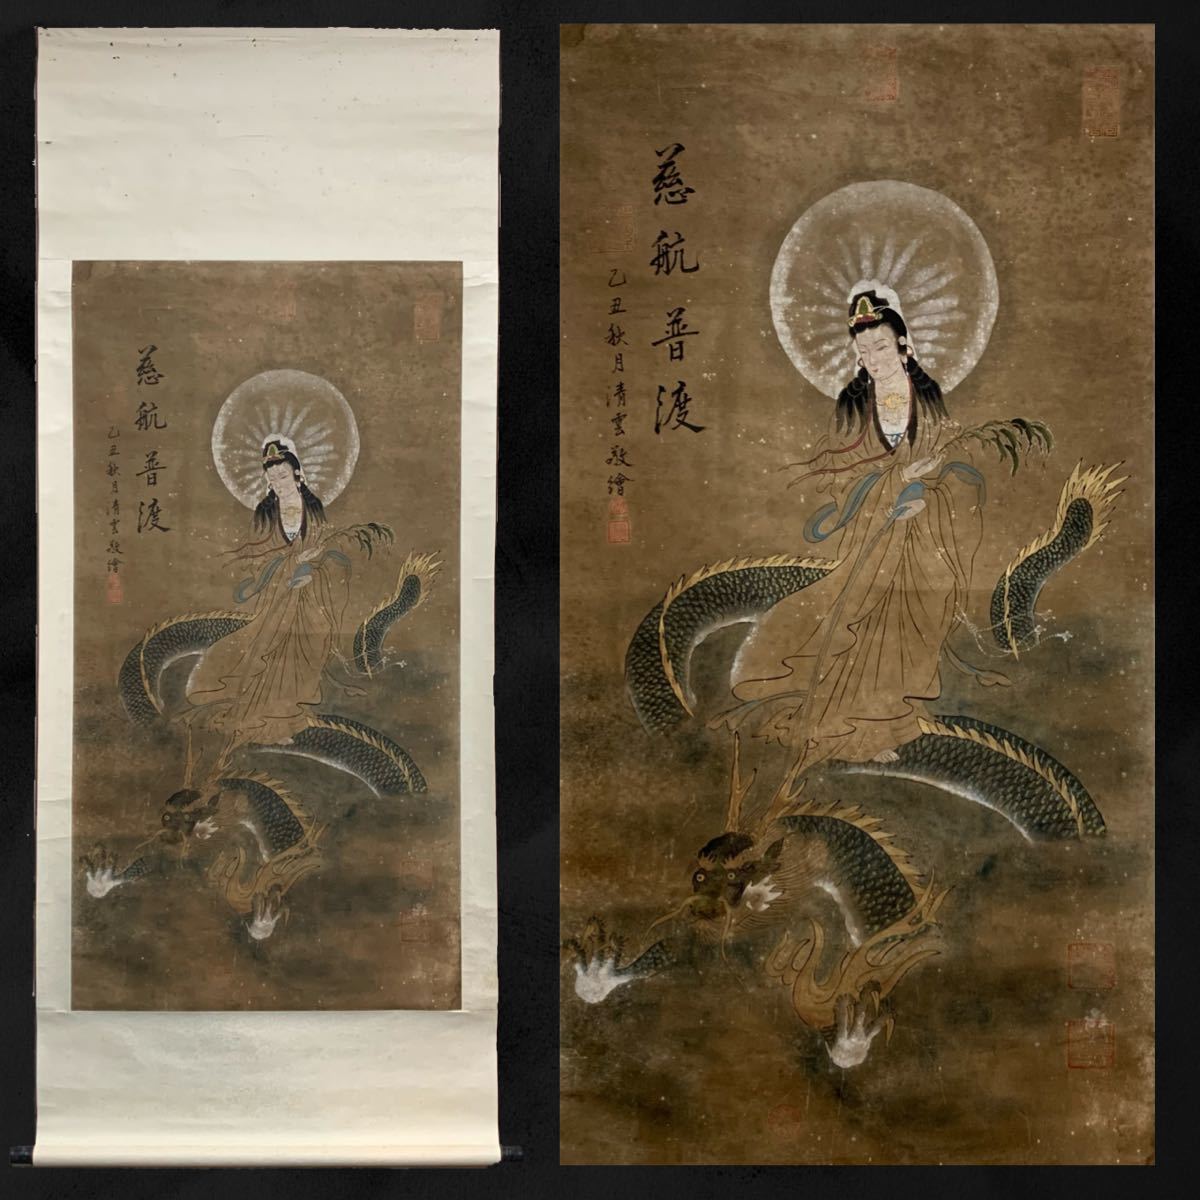 [نسخة] (Rin 68) Seiun نقش Kannon Bodhisattva على التنين المعلق التمرير البوذي اللوحة الفن البوذي حوالي 193 × 80 سم, تلوين, اللوحة اليابانية, شخص, بوديساتفا